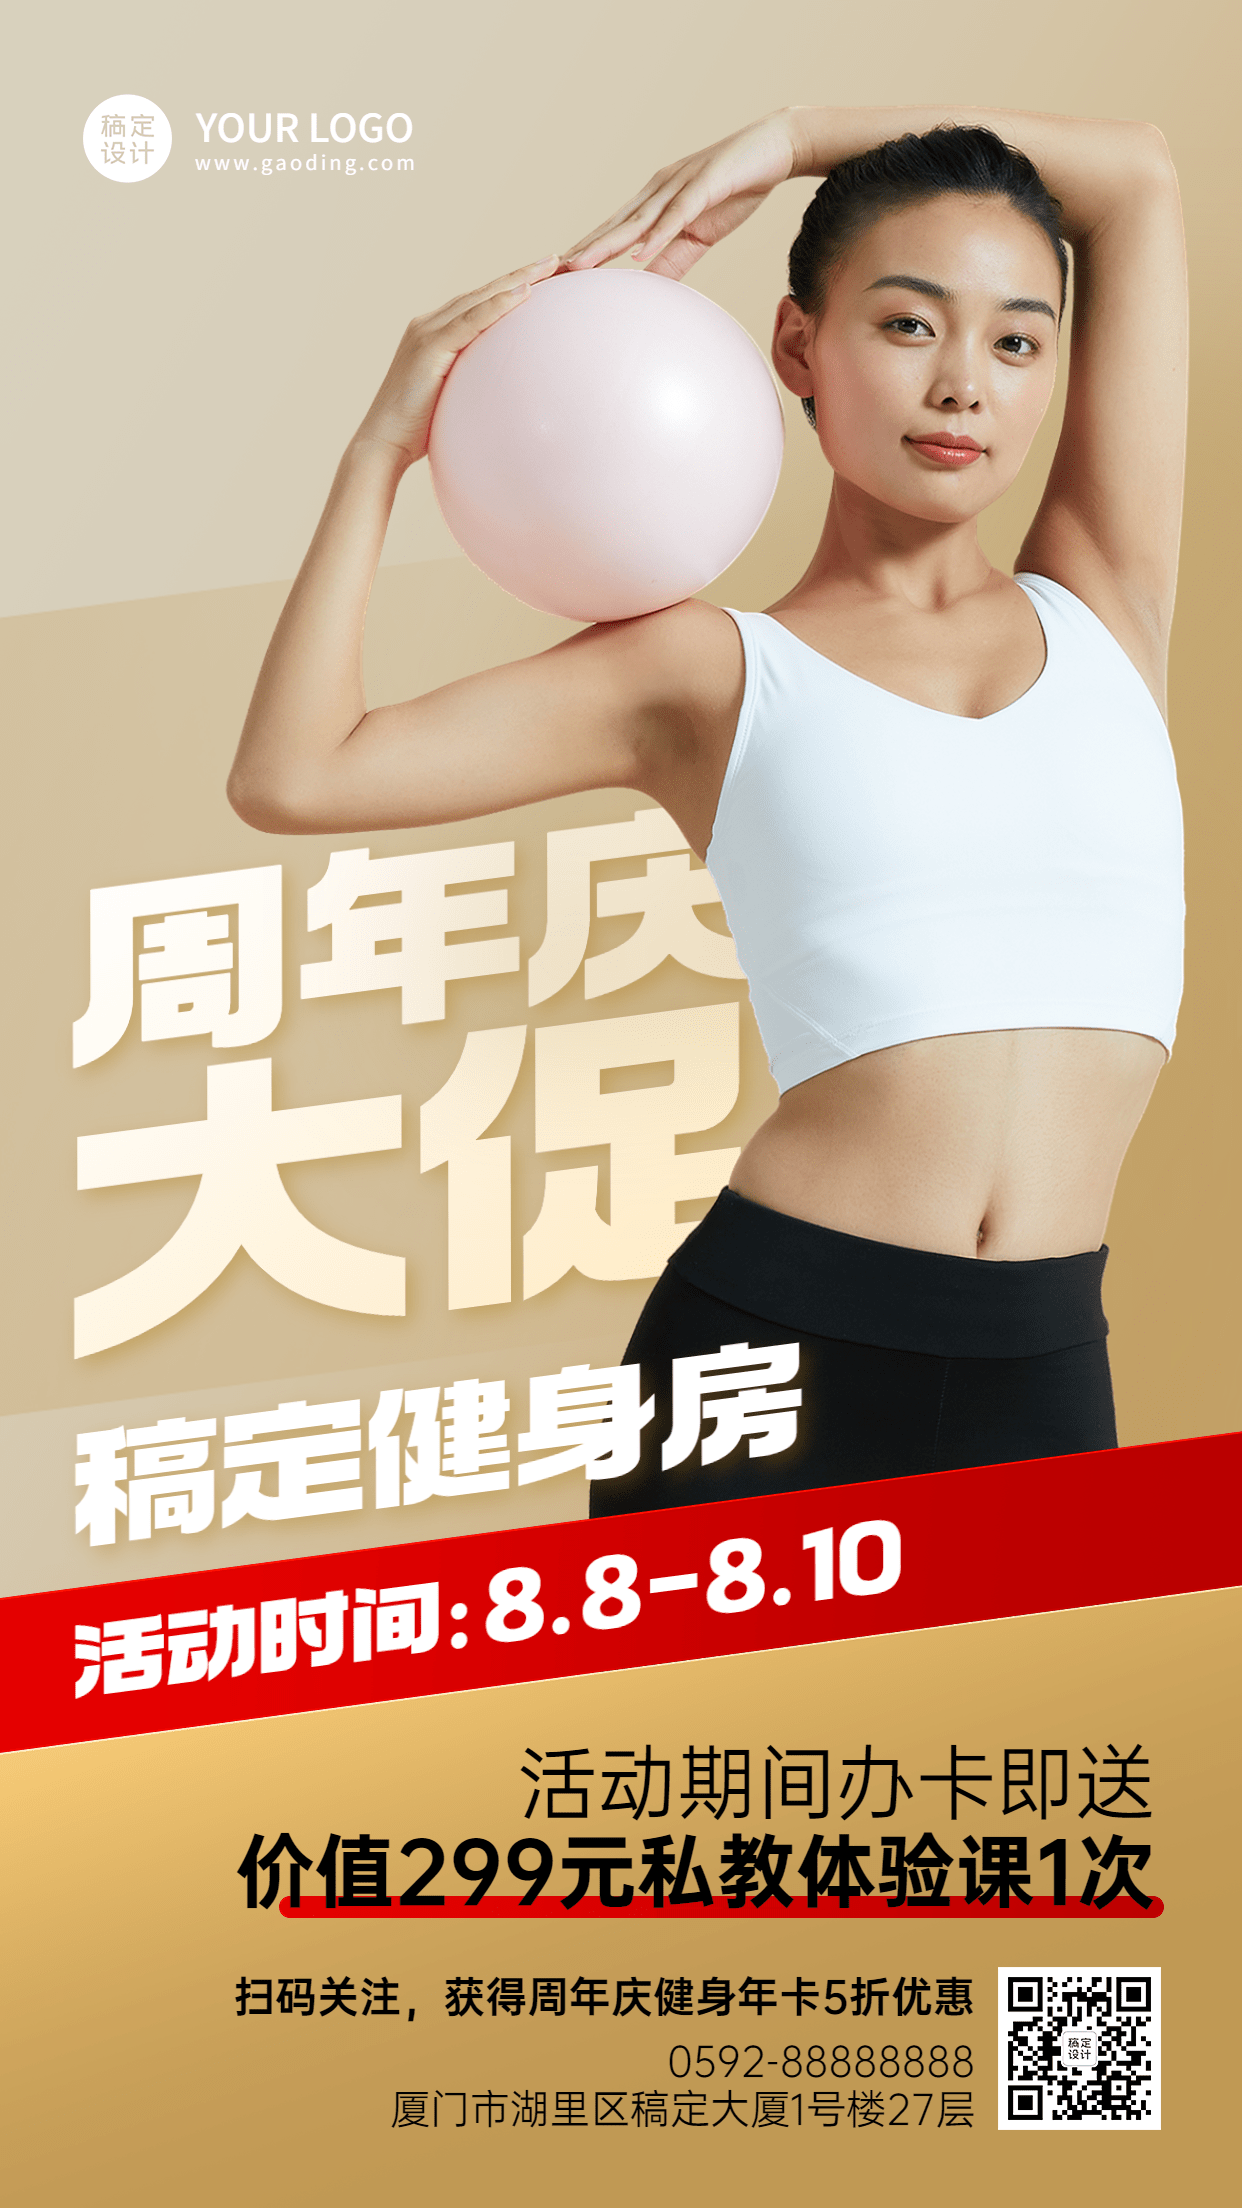 微商运动健身周年庆促销优惠手机海报